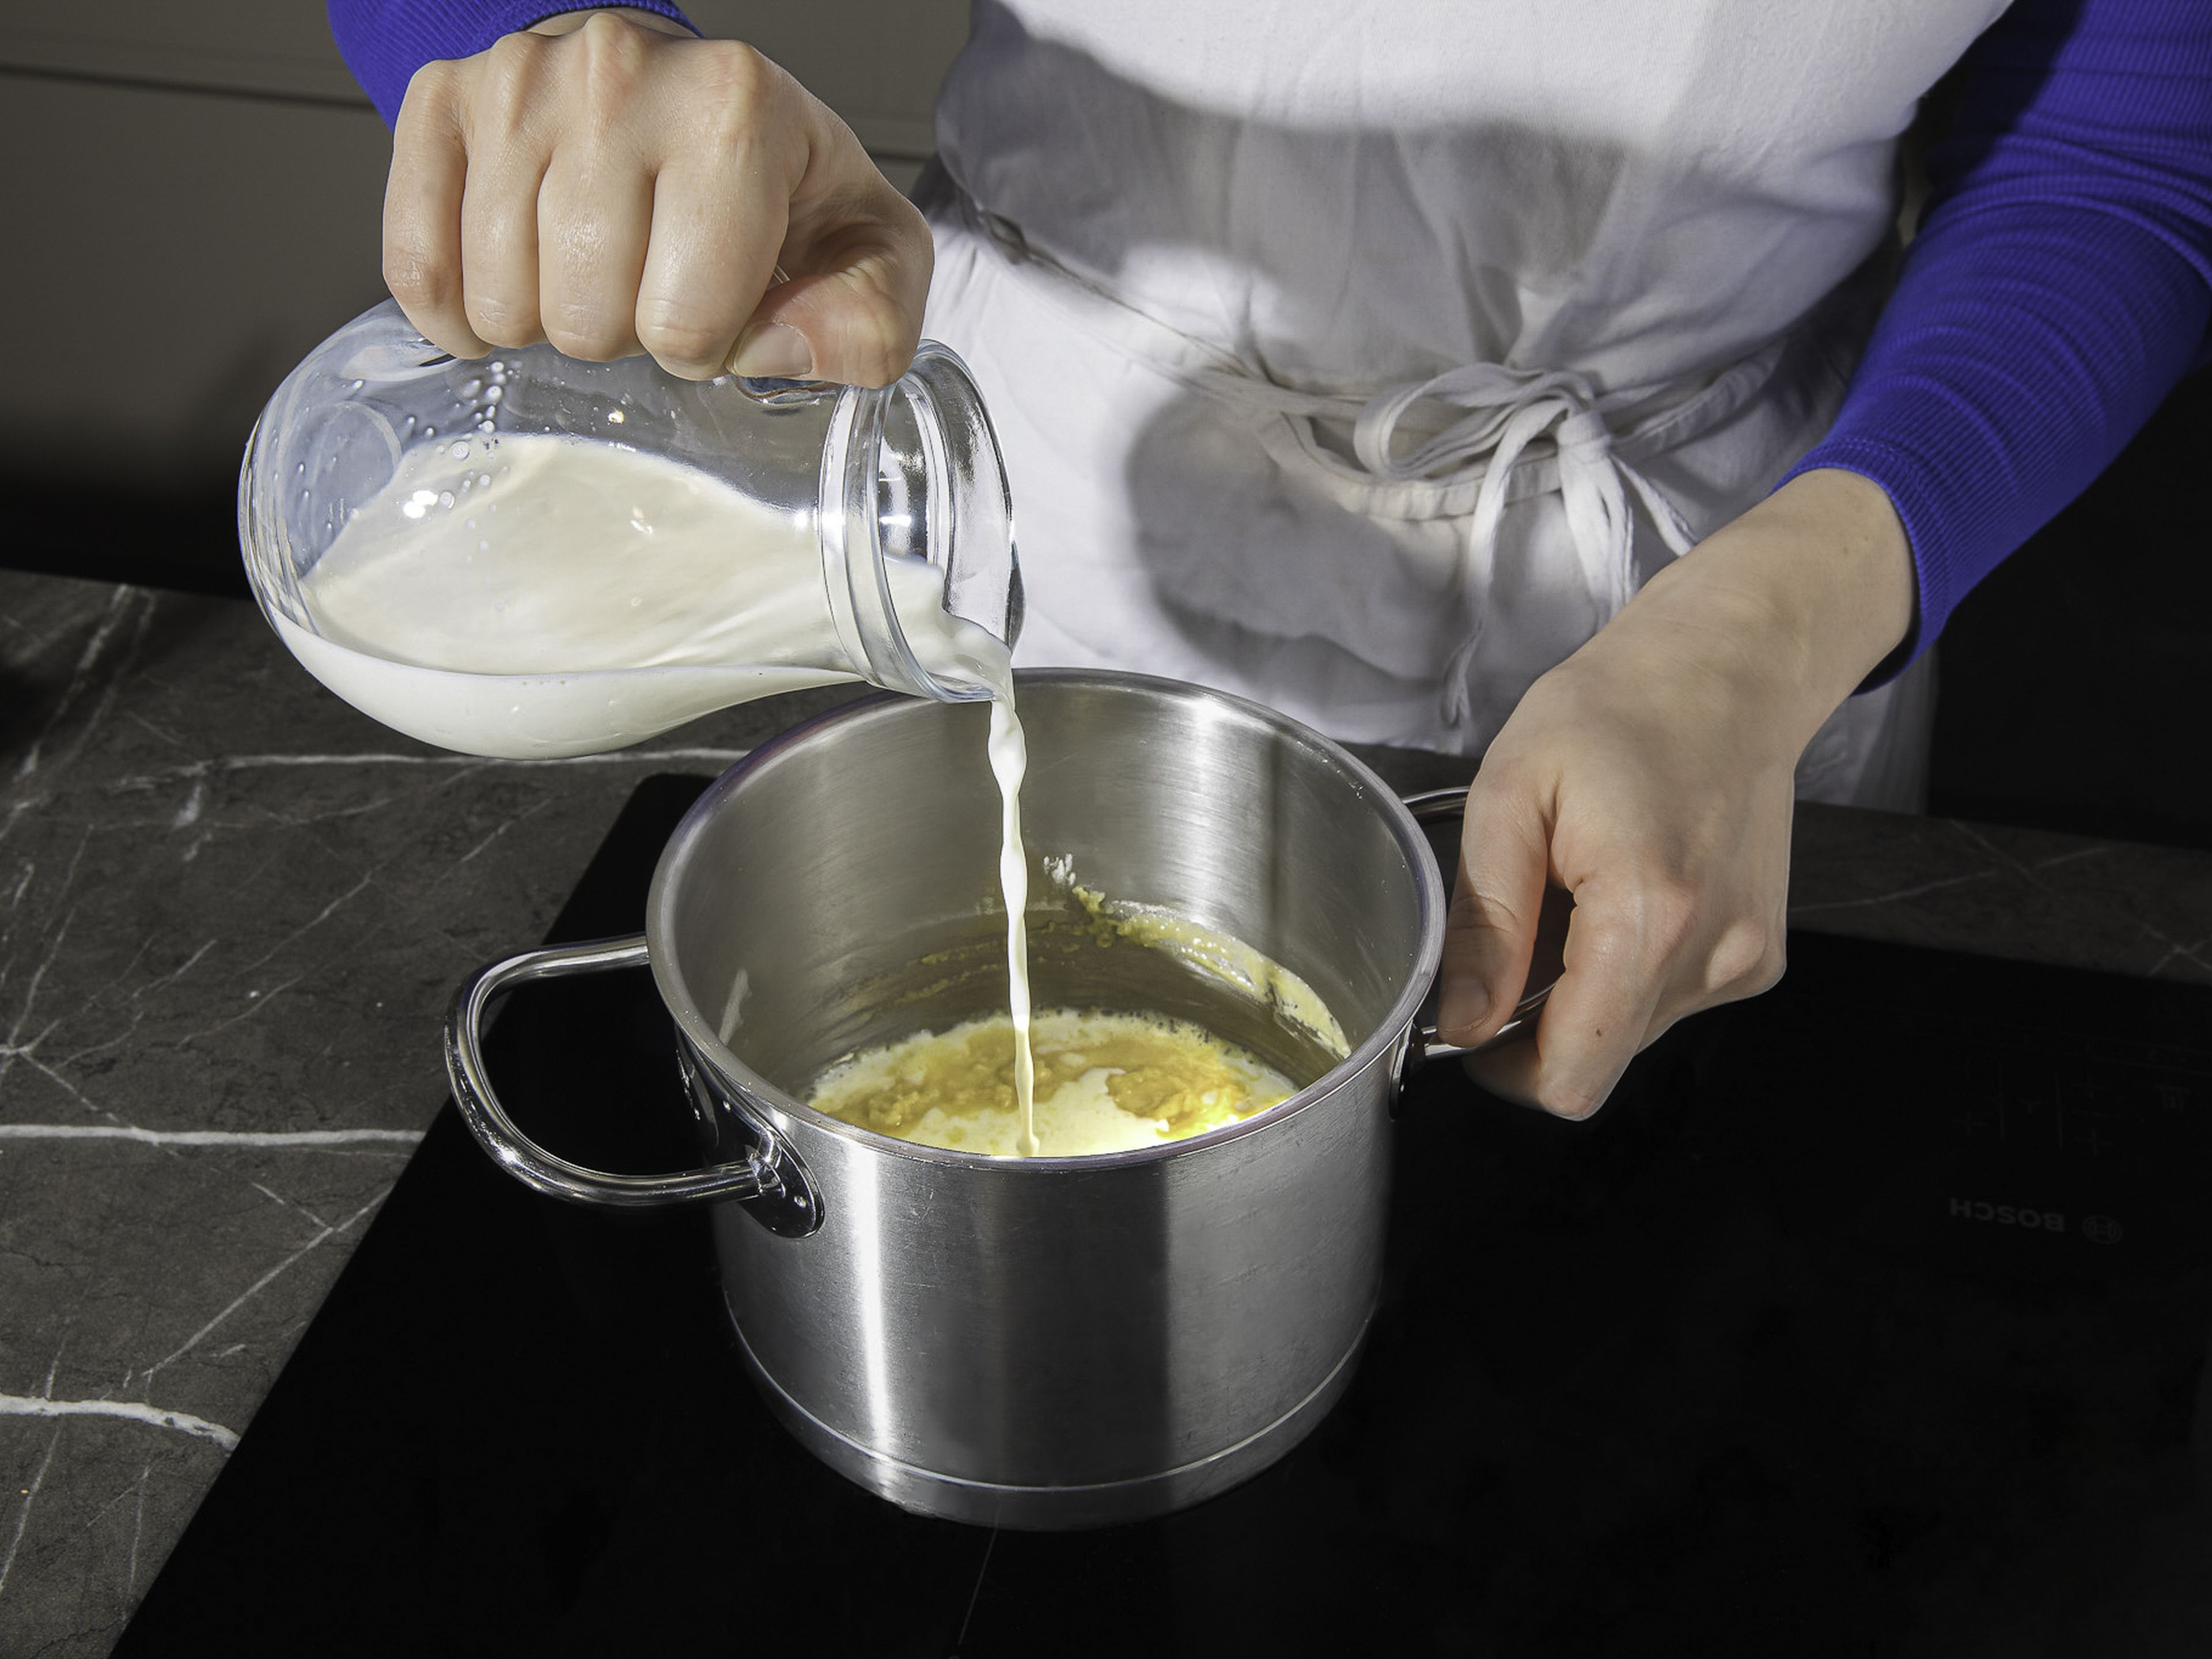 Den Ofen auf 190°C vorheizen. Den Gruyère-Käse reiben. Die Butter in einem kleinen Topf schmelzen und das Mehl schnell mit dem Schneebesen einrühren. Bei mittlerer Hitze ca. 2 Min. rühren, bis alles gut vermischt ist. Die Hälfte der Milch dazugeben und unter ständigem Rühren zum Kochen bringen. Die Béchamelsoße ca. 2–3 Min. köcheln lassen, bis sie eindickt. Mit Salz und Pfeffer abschmecken und beiseitestellen.